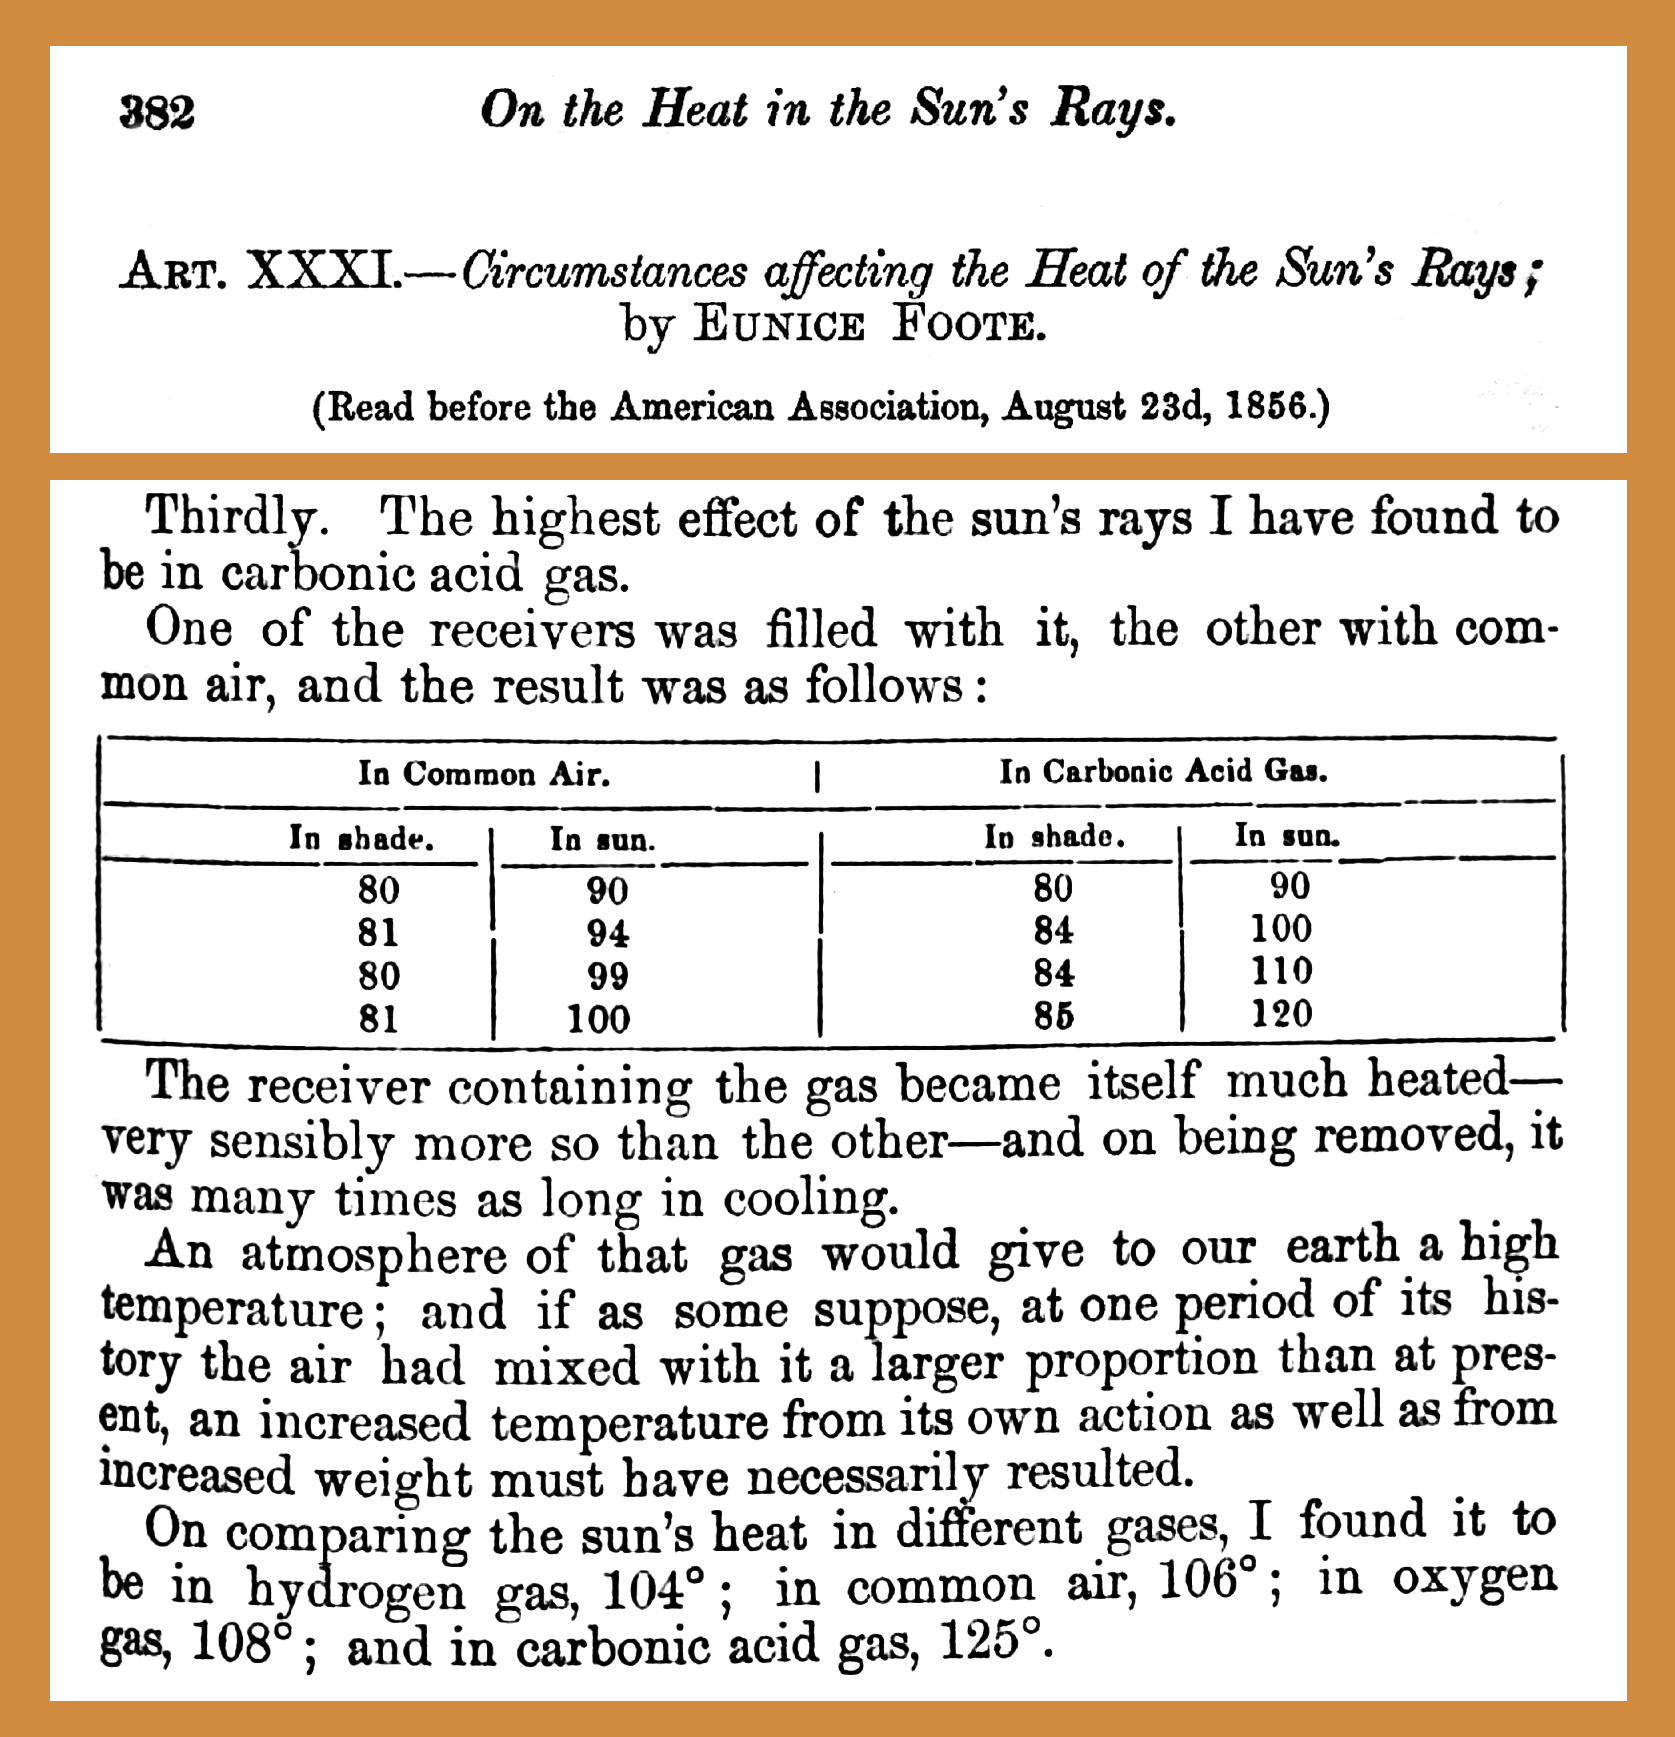 Article scientifiques sur l’ttestation de l’effet de serre en 1856